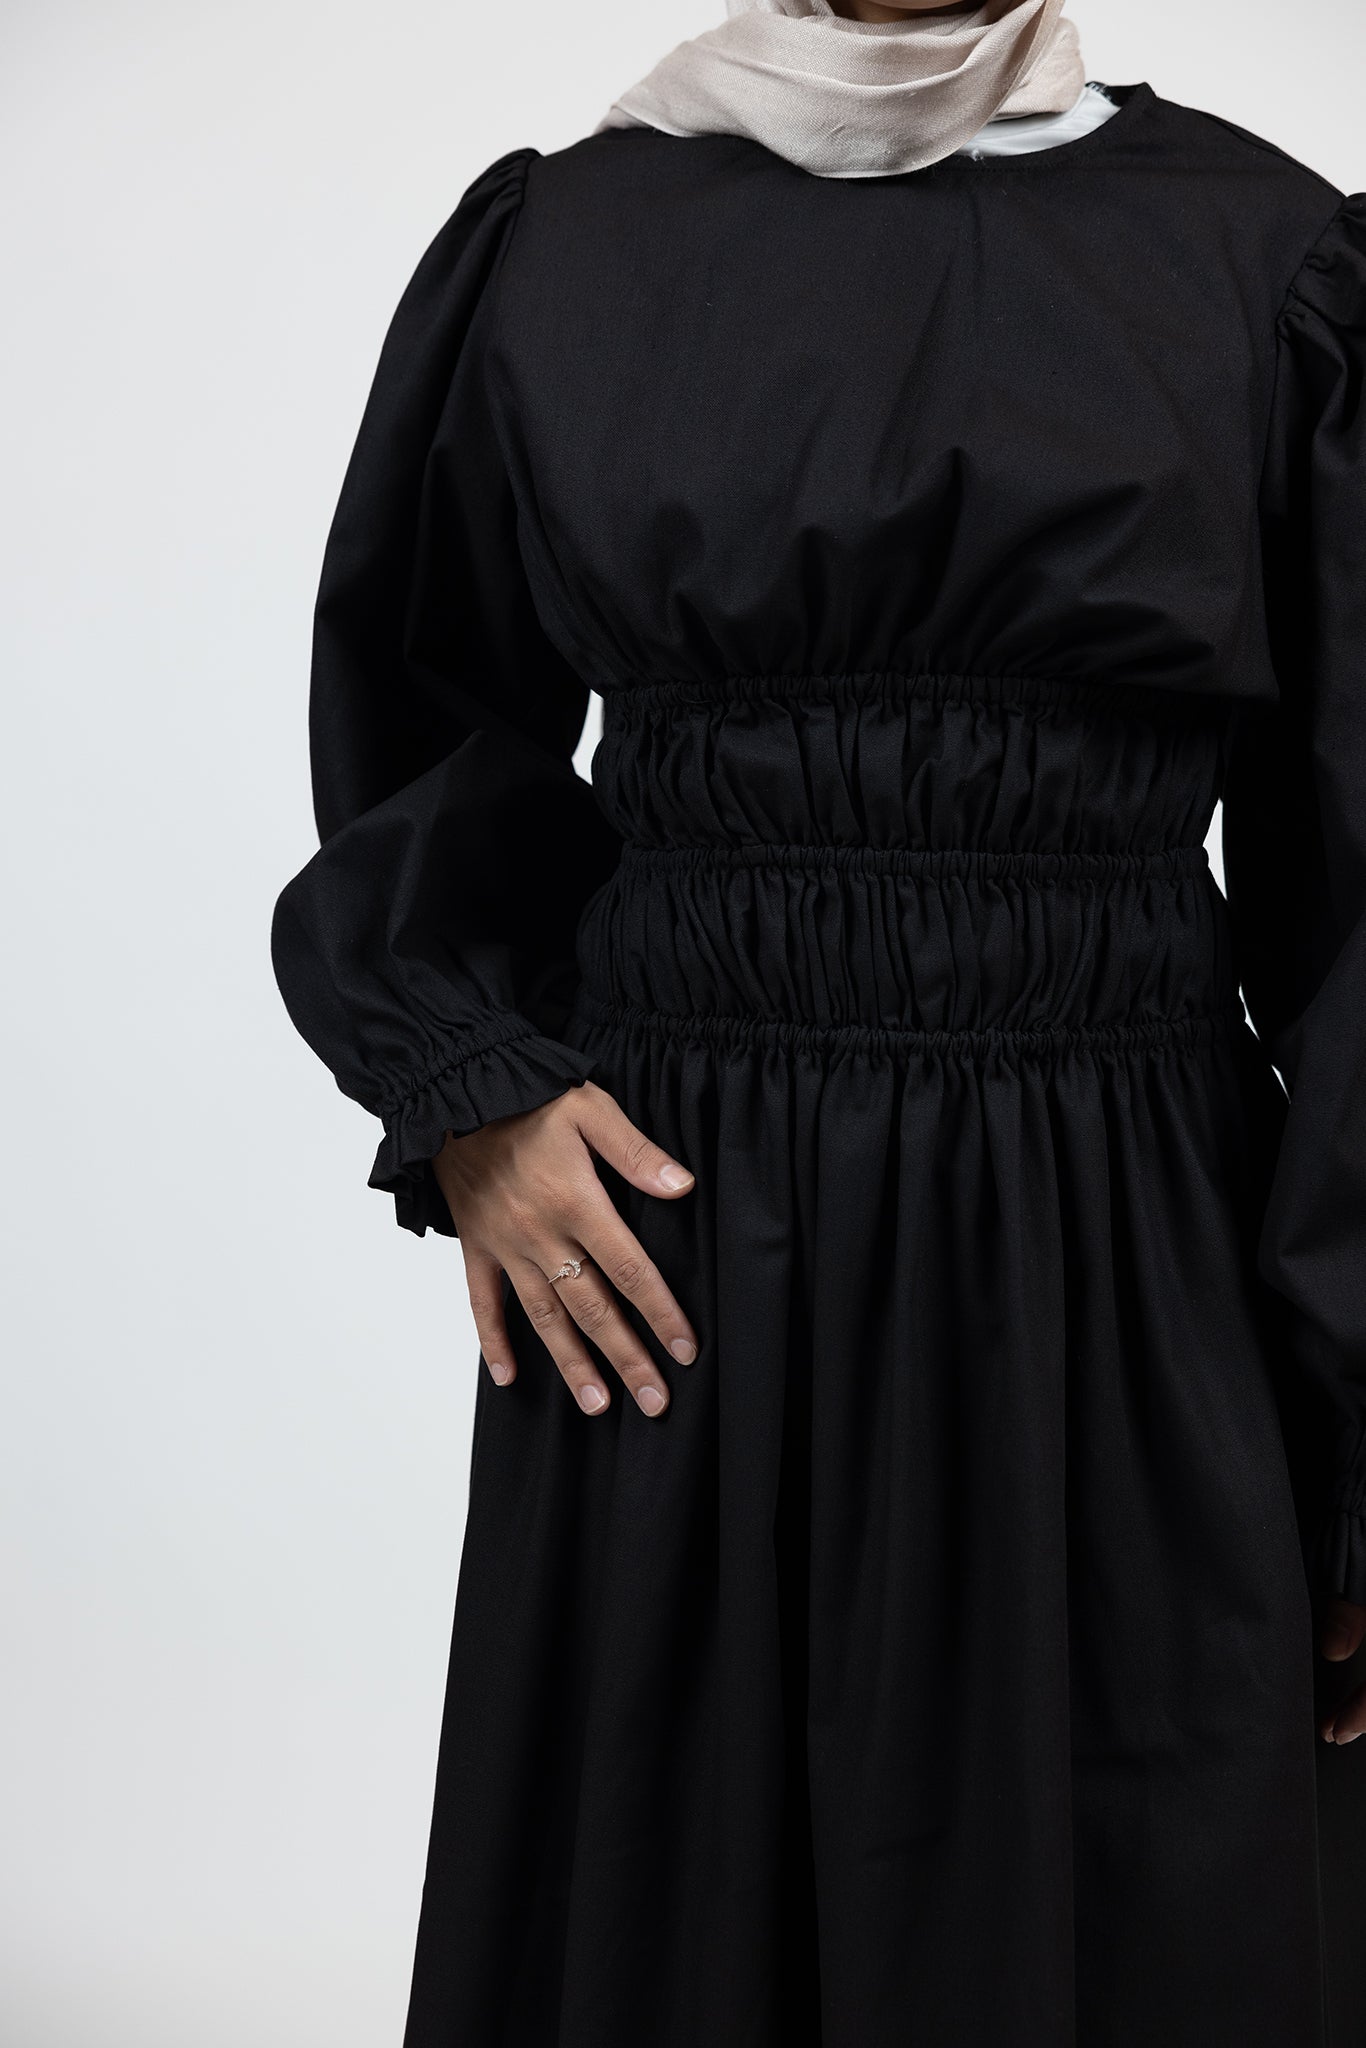 M7993Black-abaya-dress